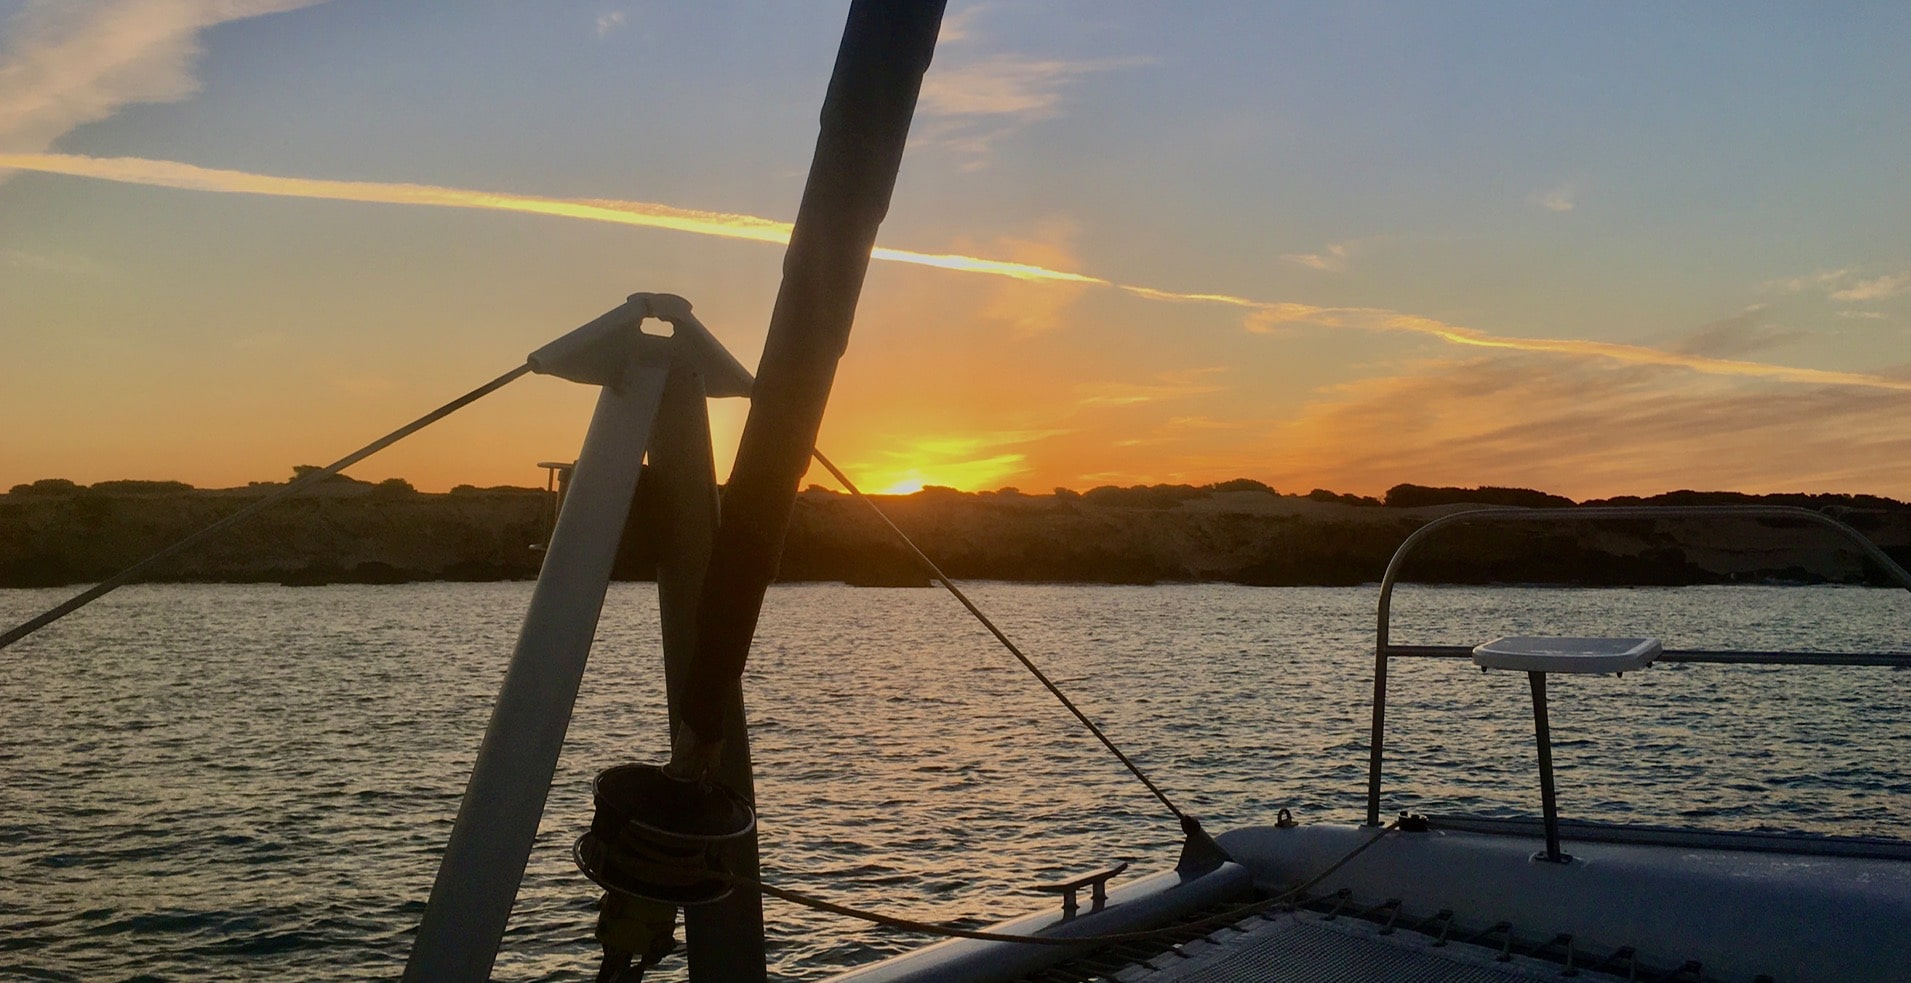 Alquiler catamarán Ibiza, puesta de sol en talamanca.